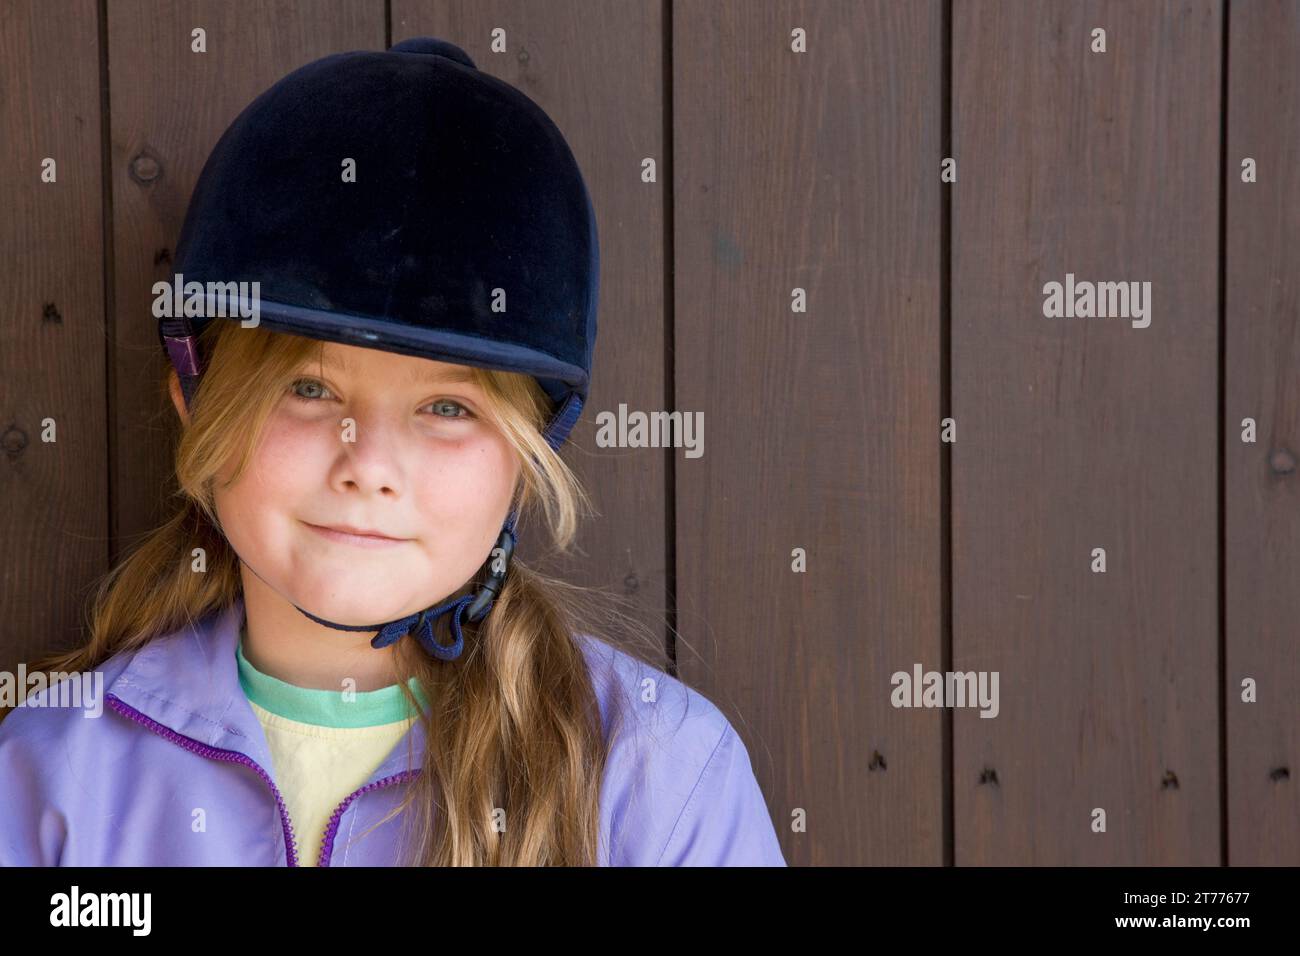 Portrait d'une jeune fille portant un chapeau d'équitation Banque D'Images